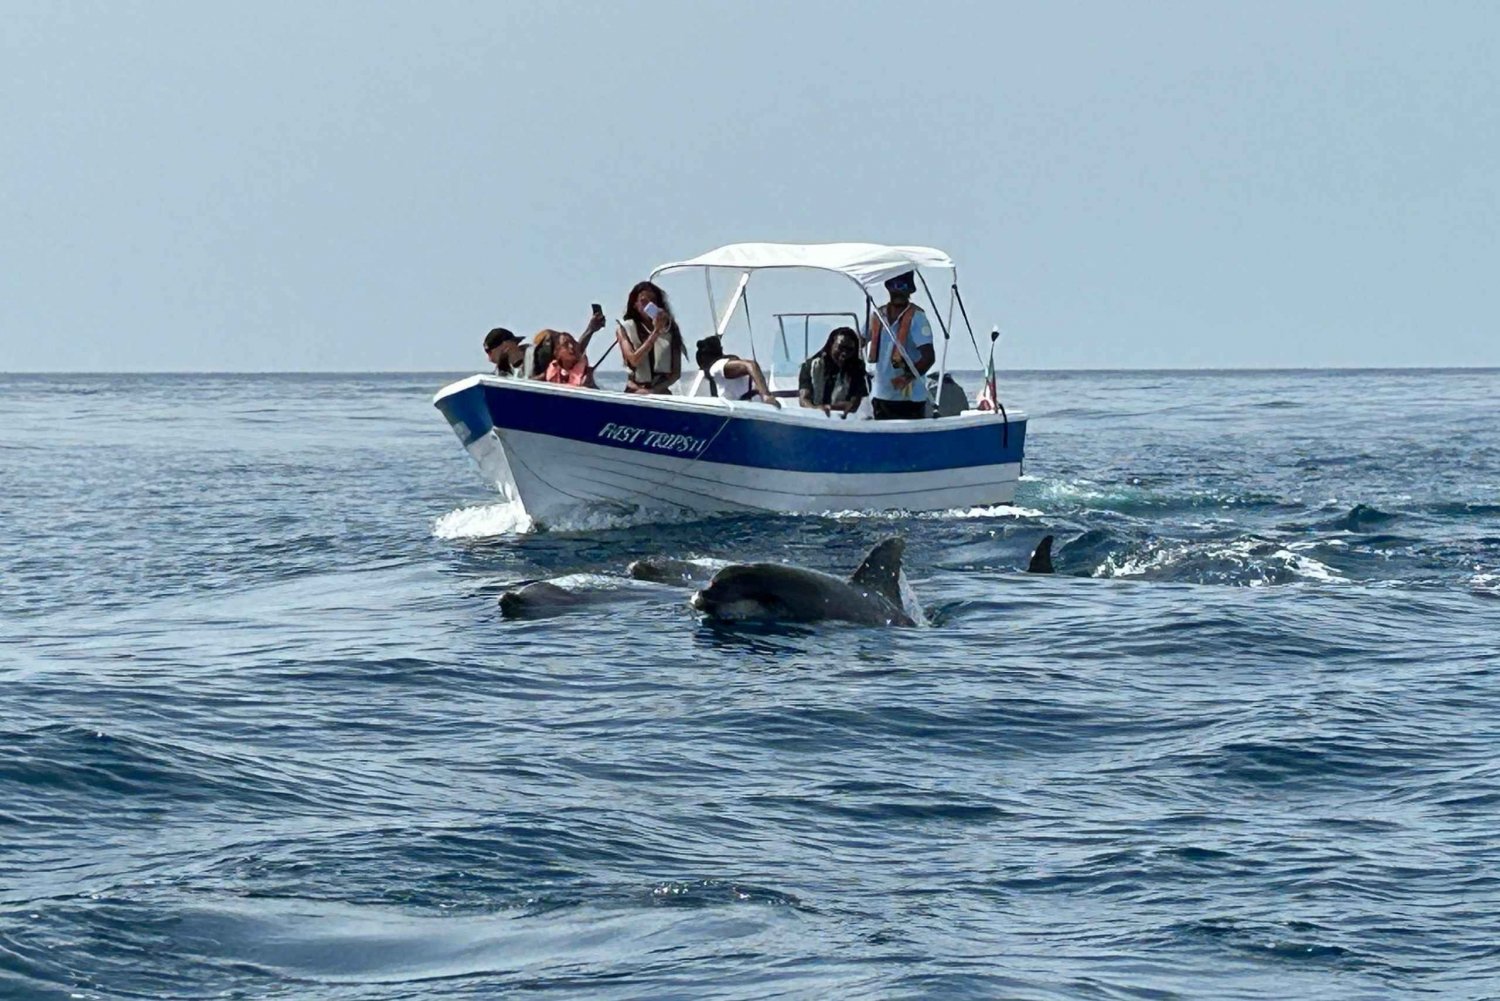 Ольян – Сафари с наблюдением за дельфинами и другими видами